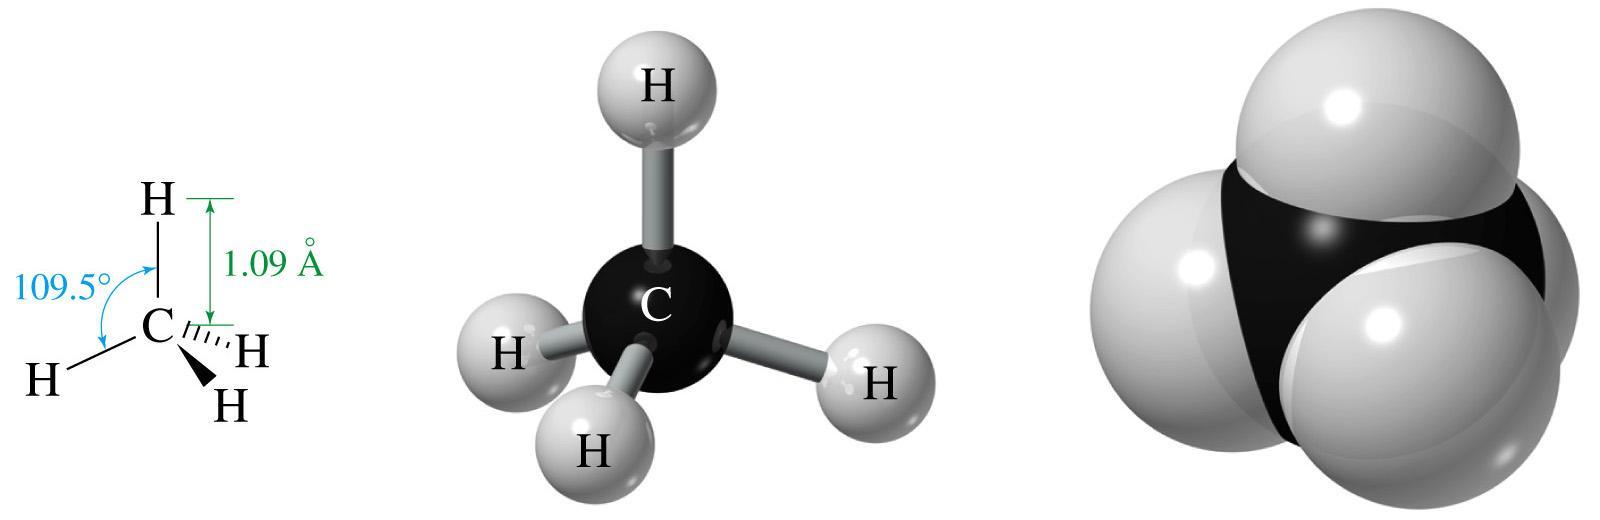 Representaciones Moleculares: Figura 1. De izquierda a derecha. Representación estructural del Metano, Representaciones Tridimensionales del Metano.